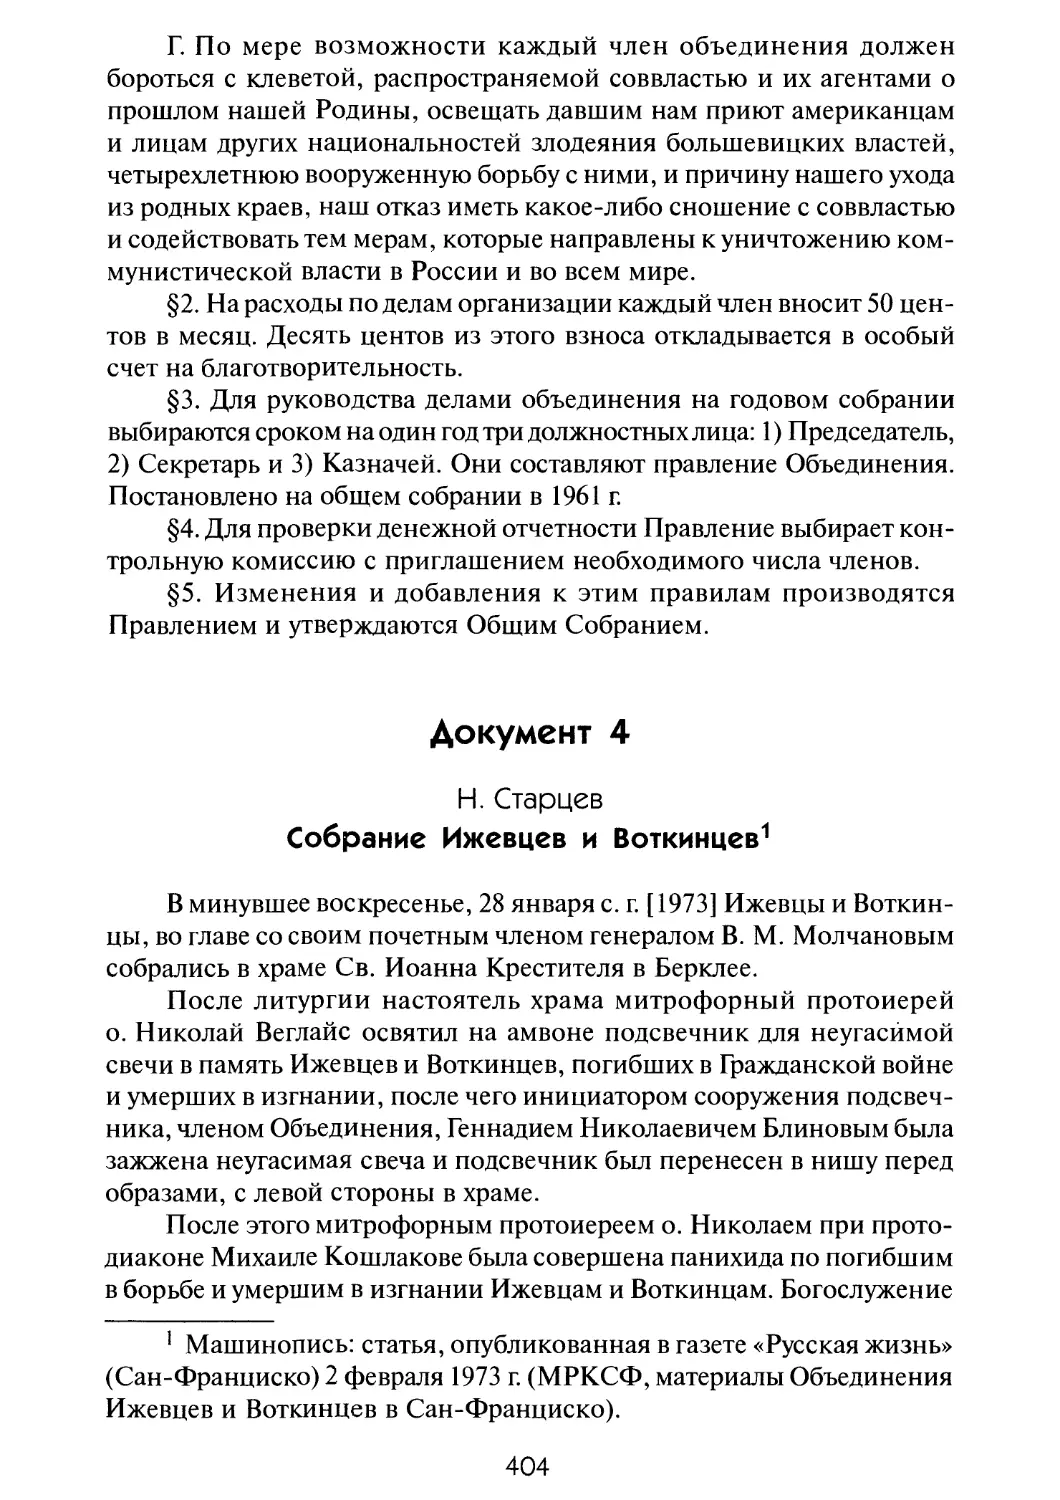 Документ 4. Старцев Н. Собрание Ижевцев и Воткинцев